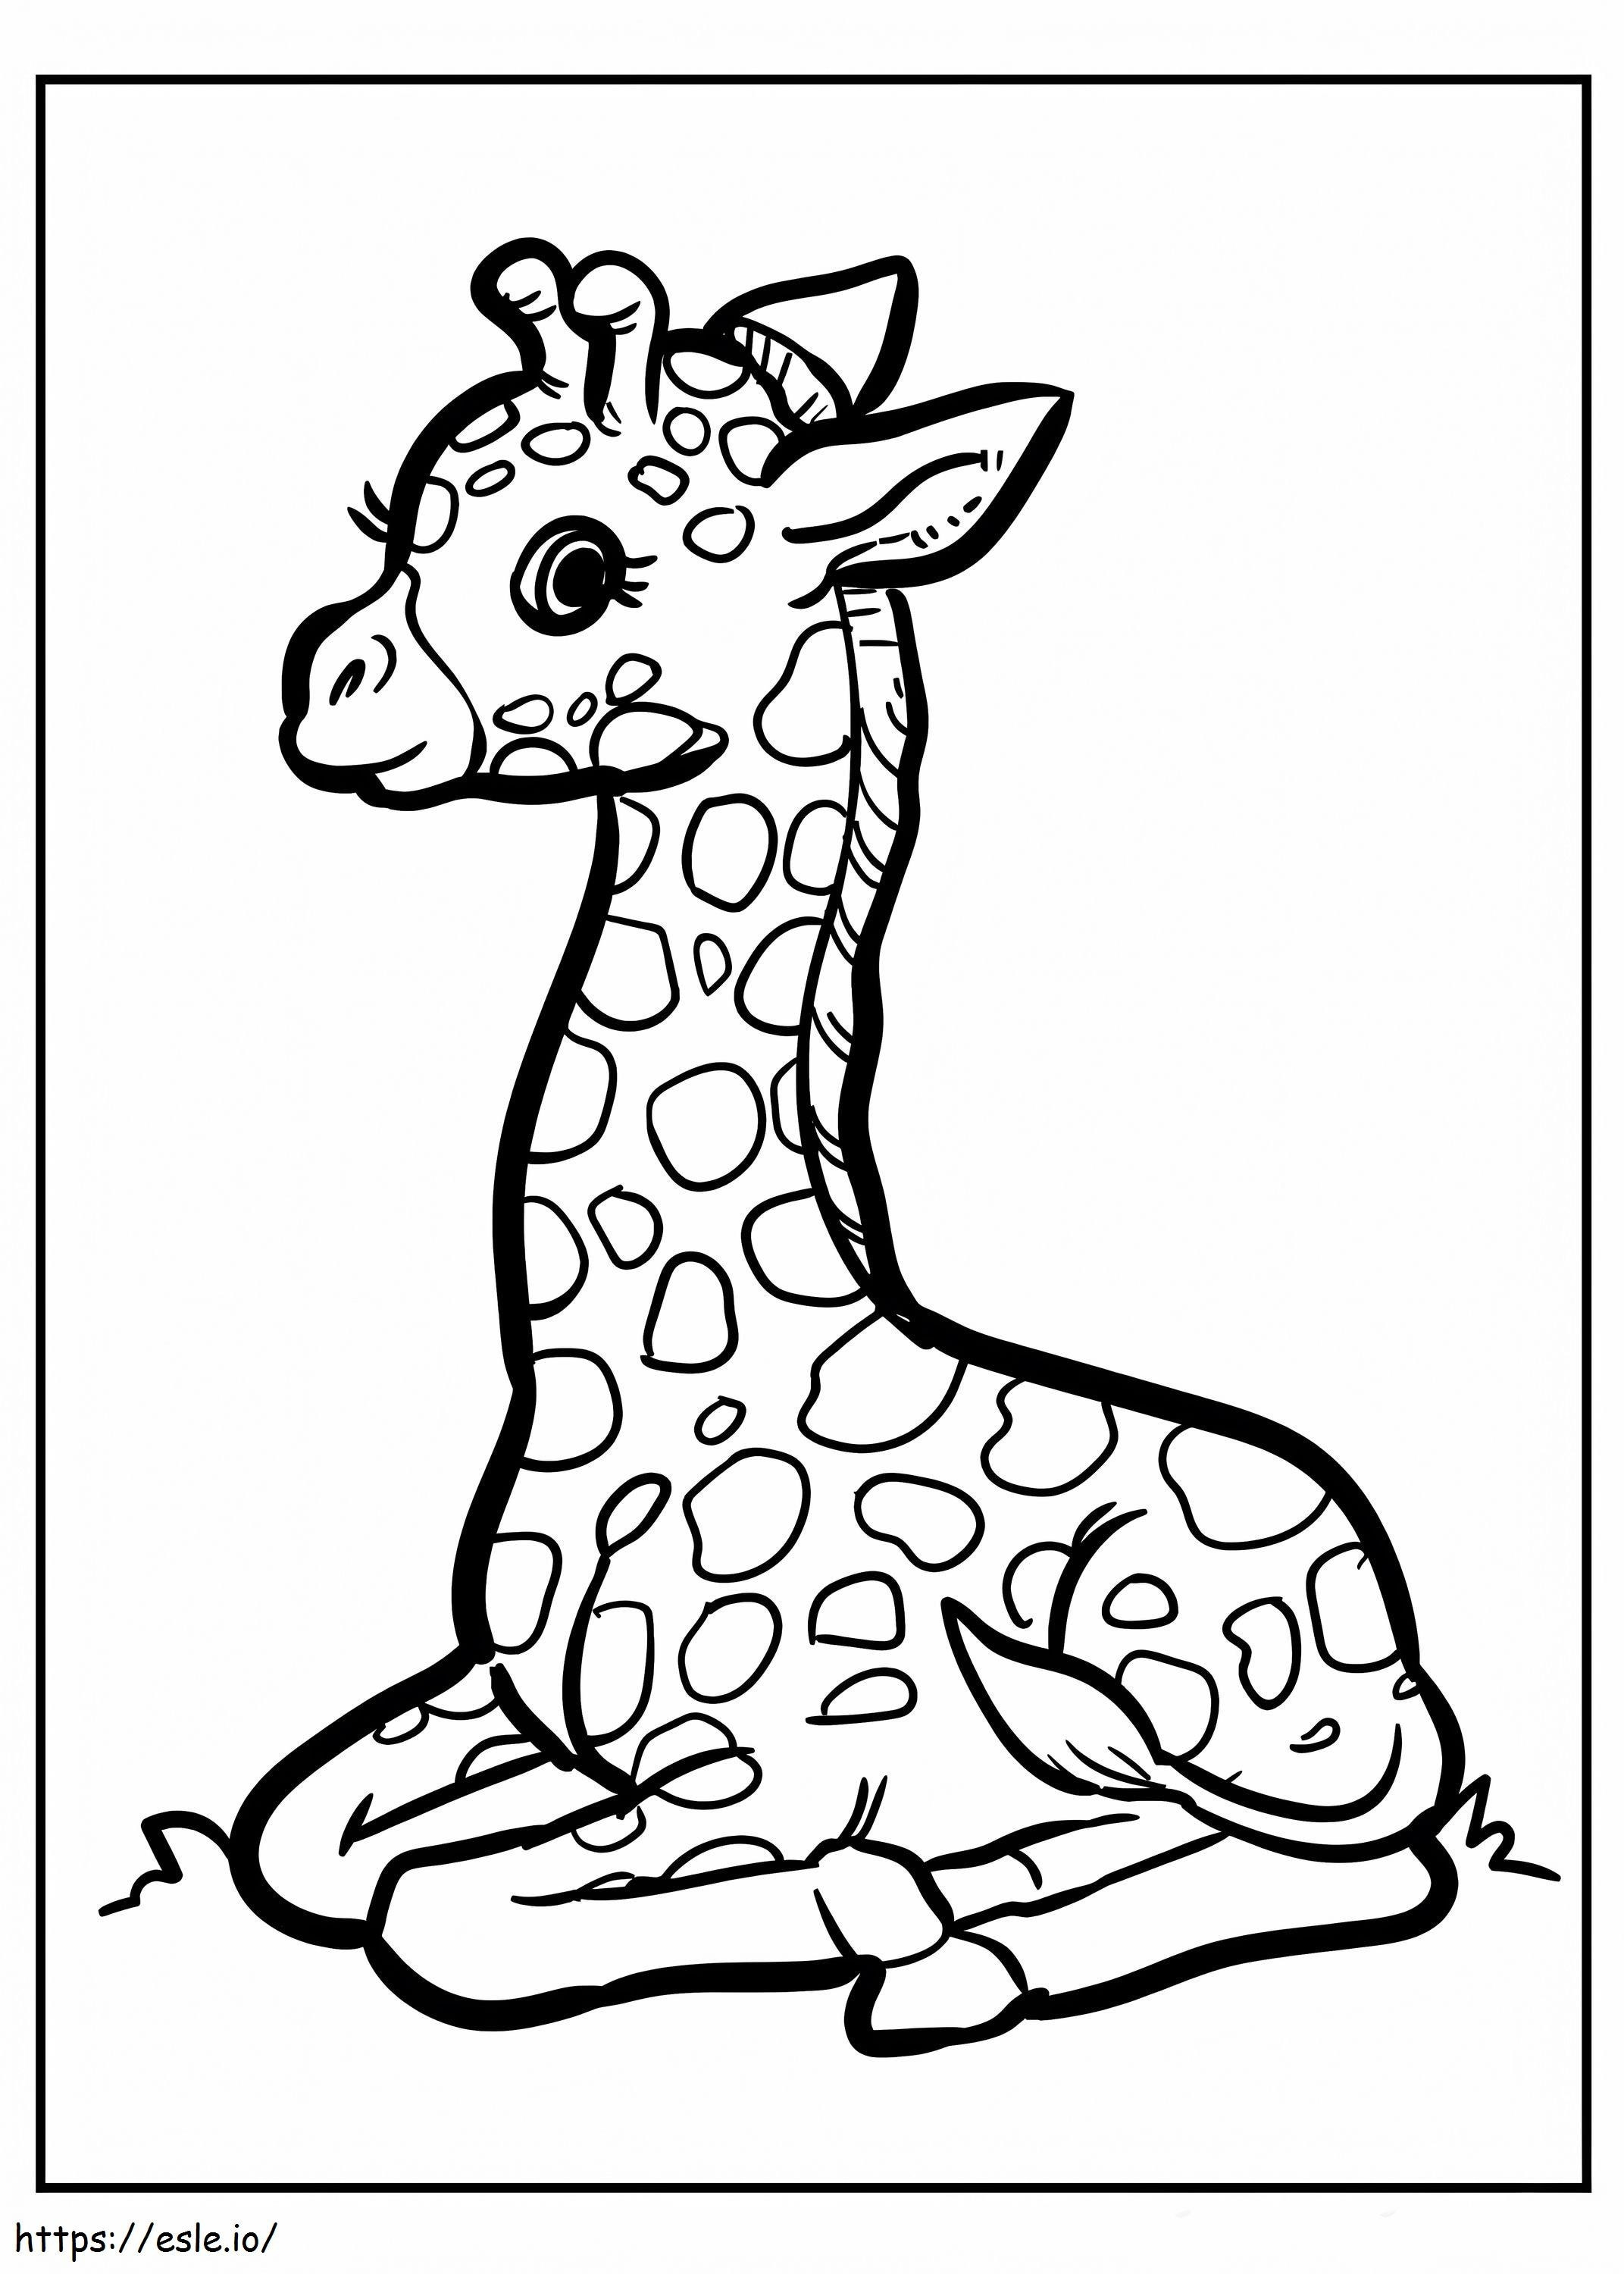 Baby-Giraffe sitzend ausmalbilder